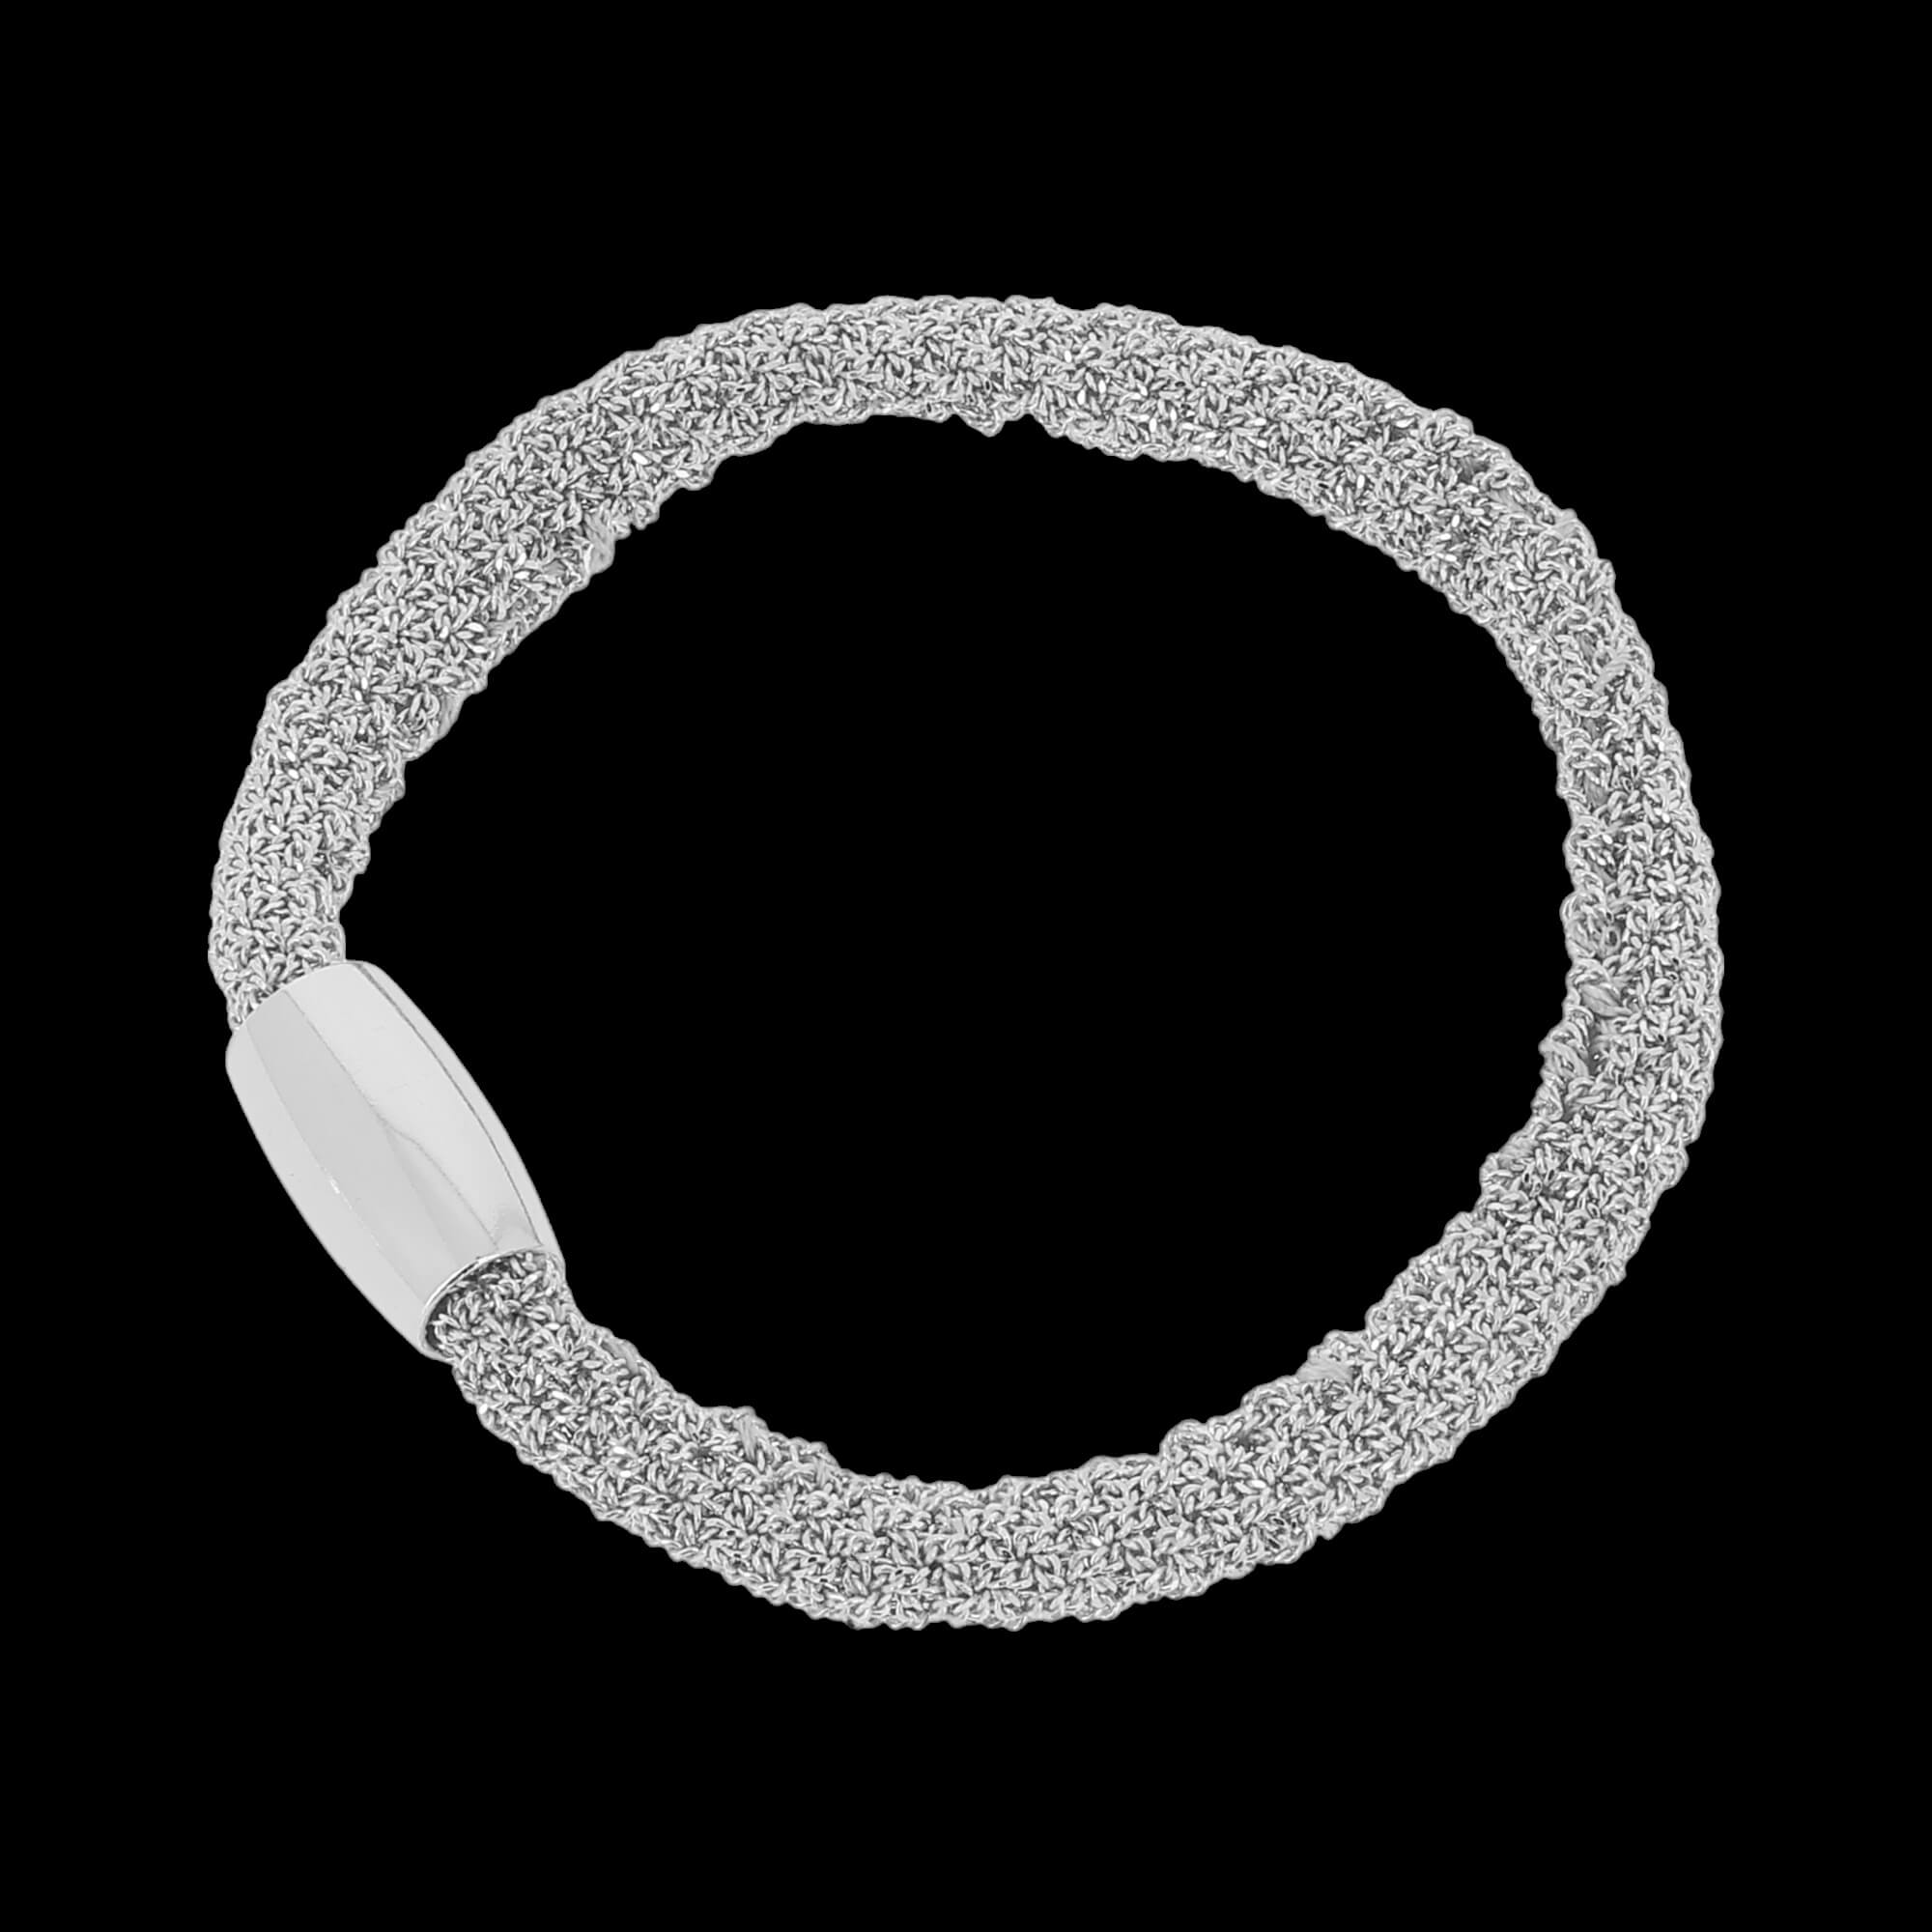 Narrow silver interwoven bracelet/heavier